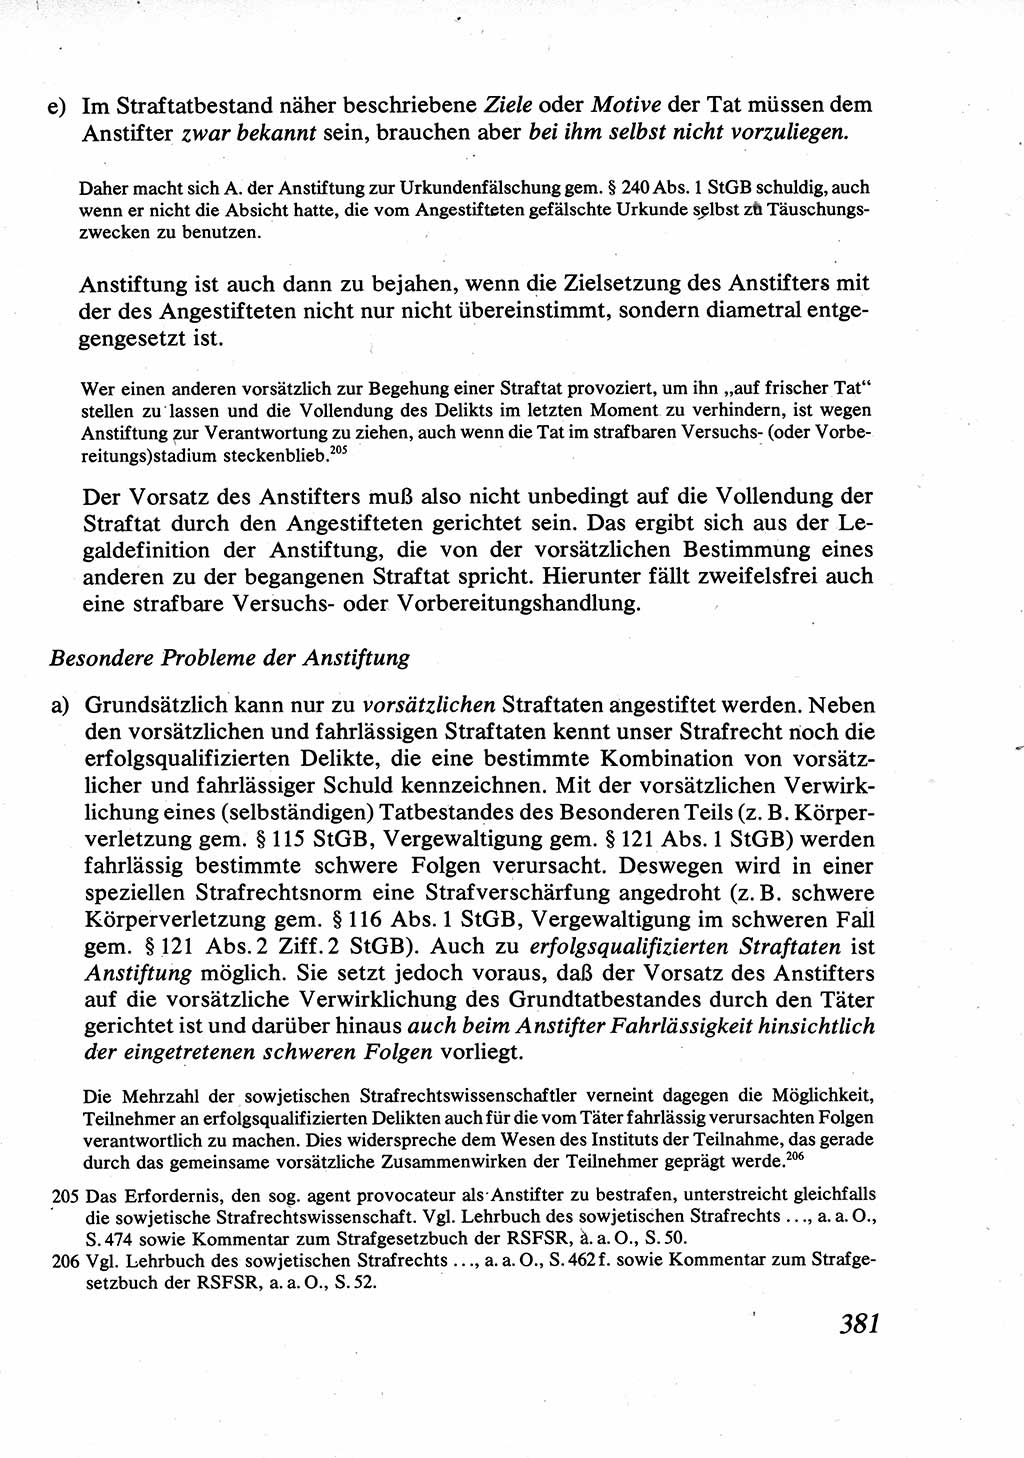 Strafrecht [Deutsche Demokratische Republik (DDR)], Allgemeiner Teil, Lehrbuch 1976, Seite 381 (Strafr. DDR AT Lb. 1976, S. 381)